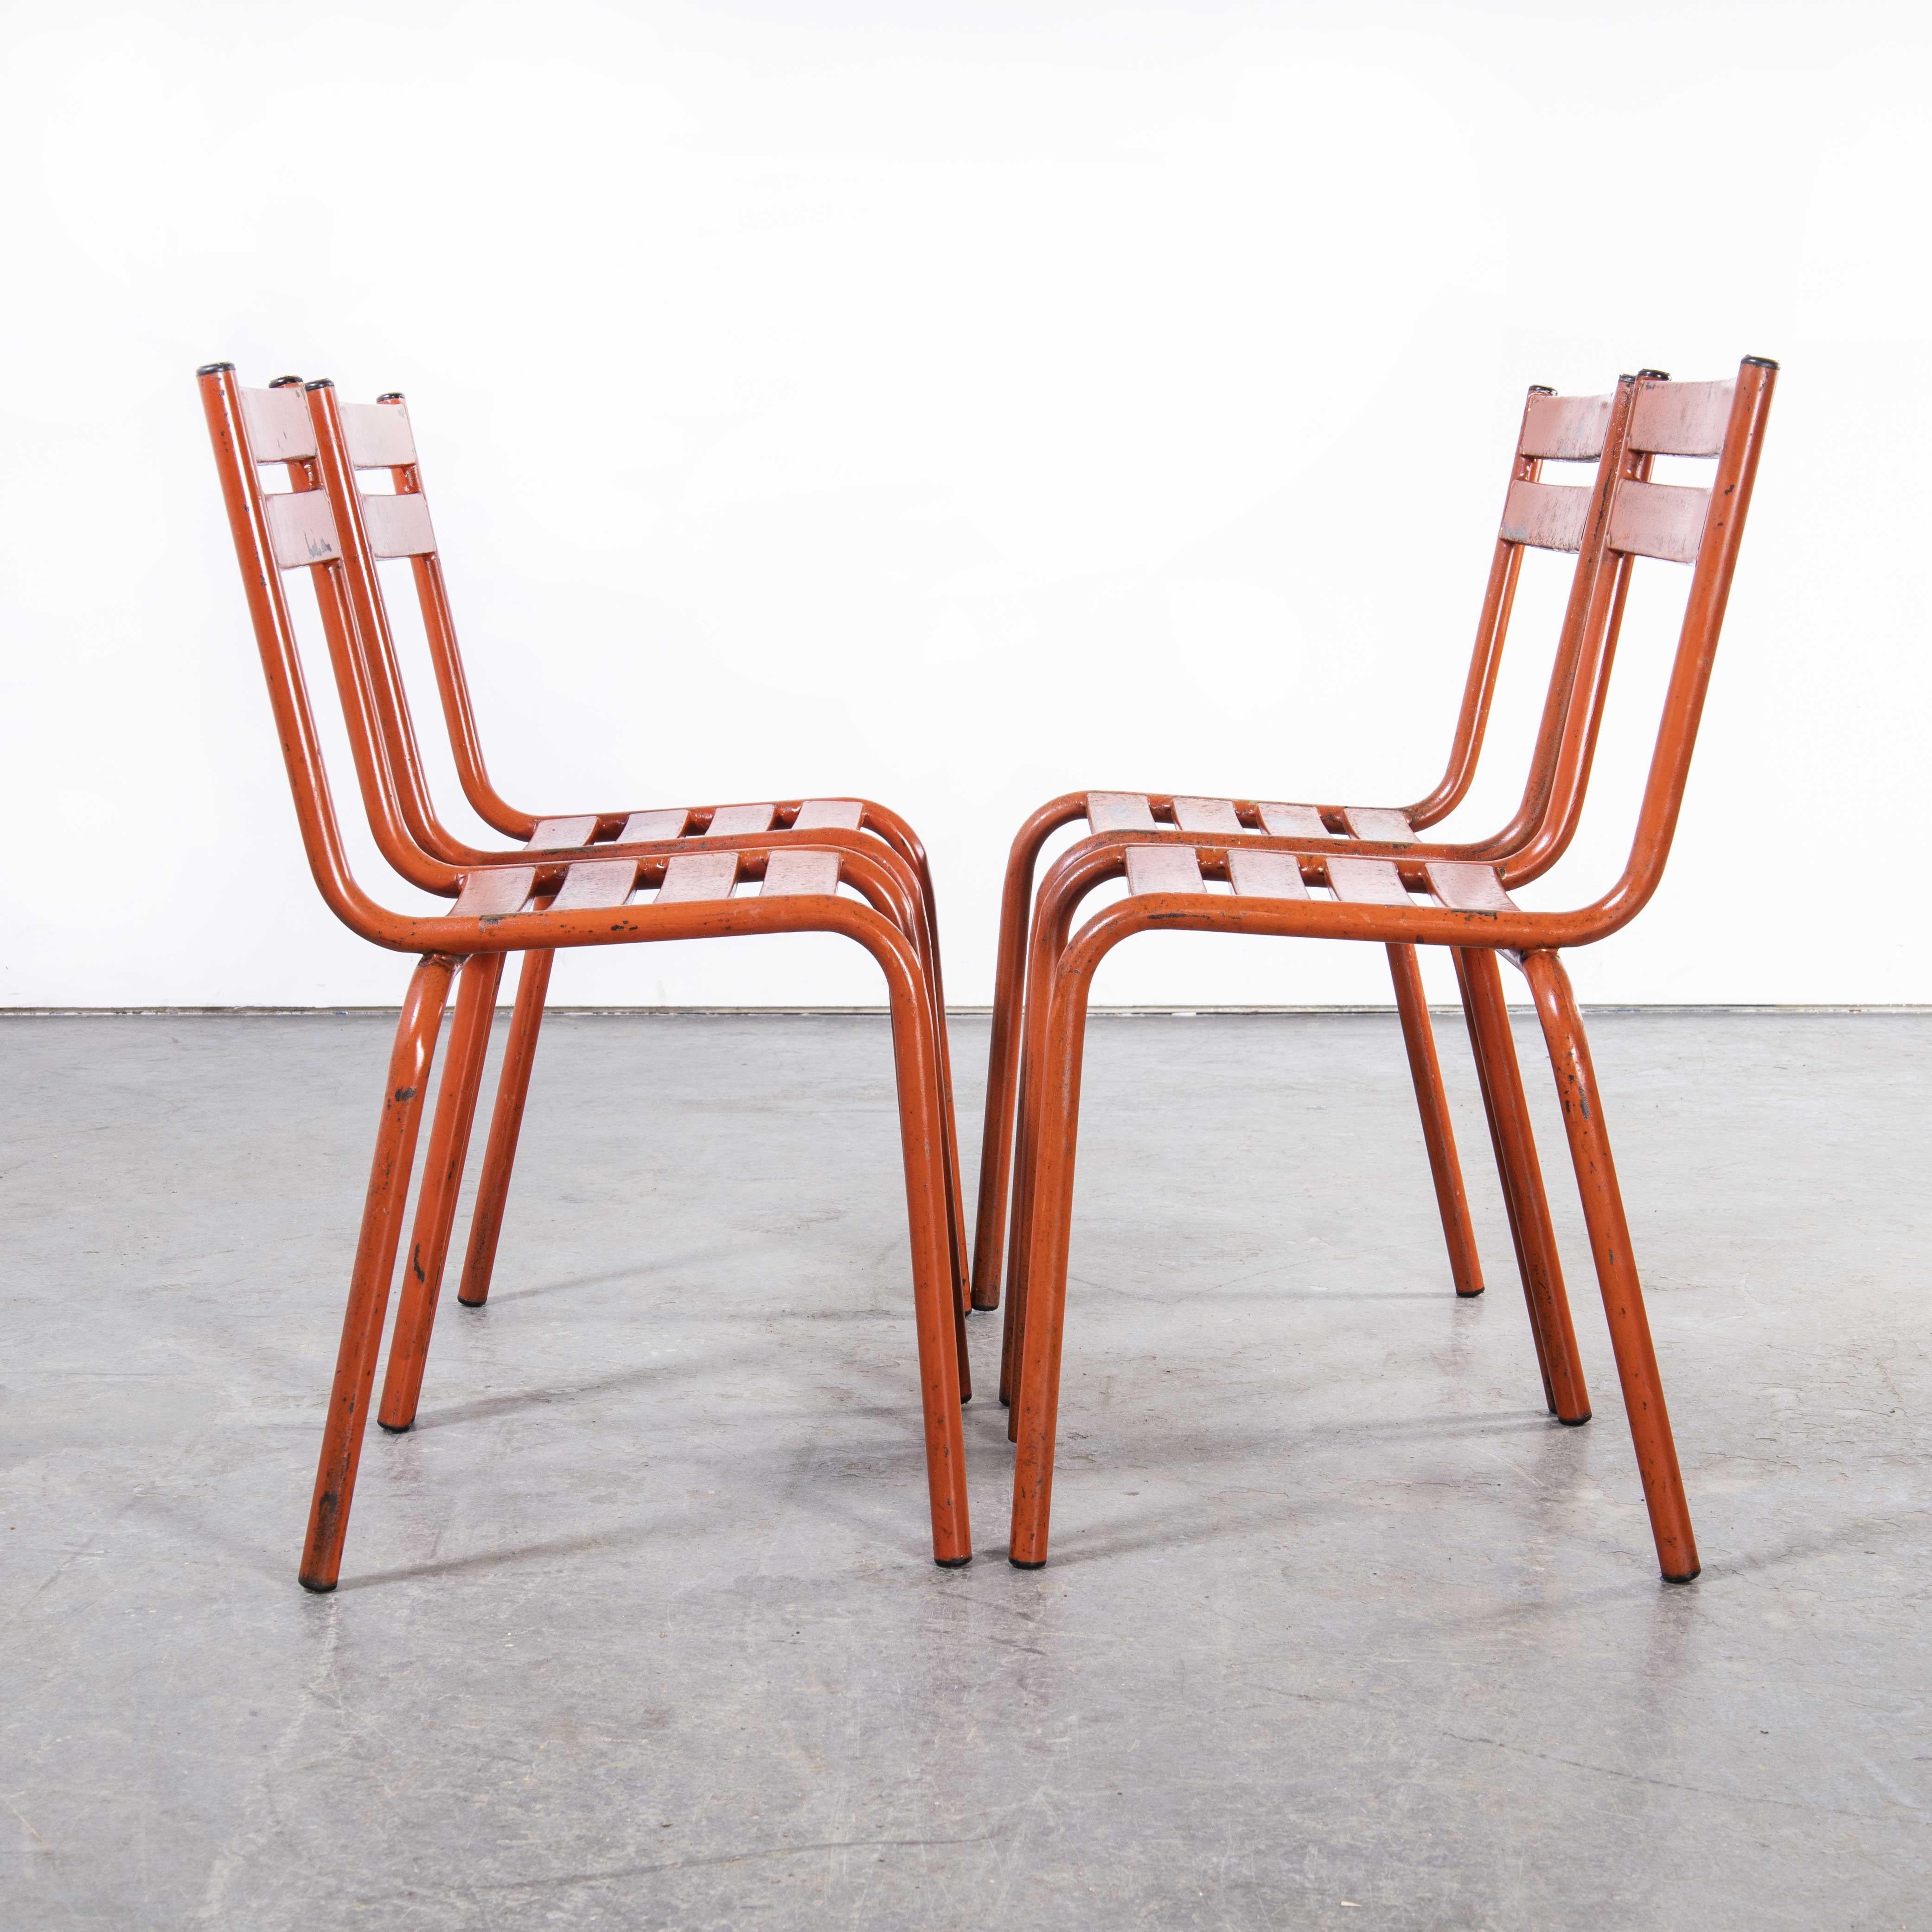 1950's French ArtProg Metall Stacking Outdoor Stühle - Set von vier
1950's French ArtProg Metall Stacking Outdoor Chairs - Set von vier. ArtProg, das an Tolix erinnert, aber nicht von Tolix hergestellt wurde, war ein Hersteller in Gray in der Haute